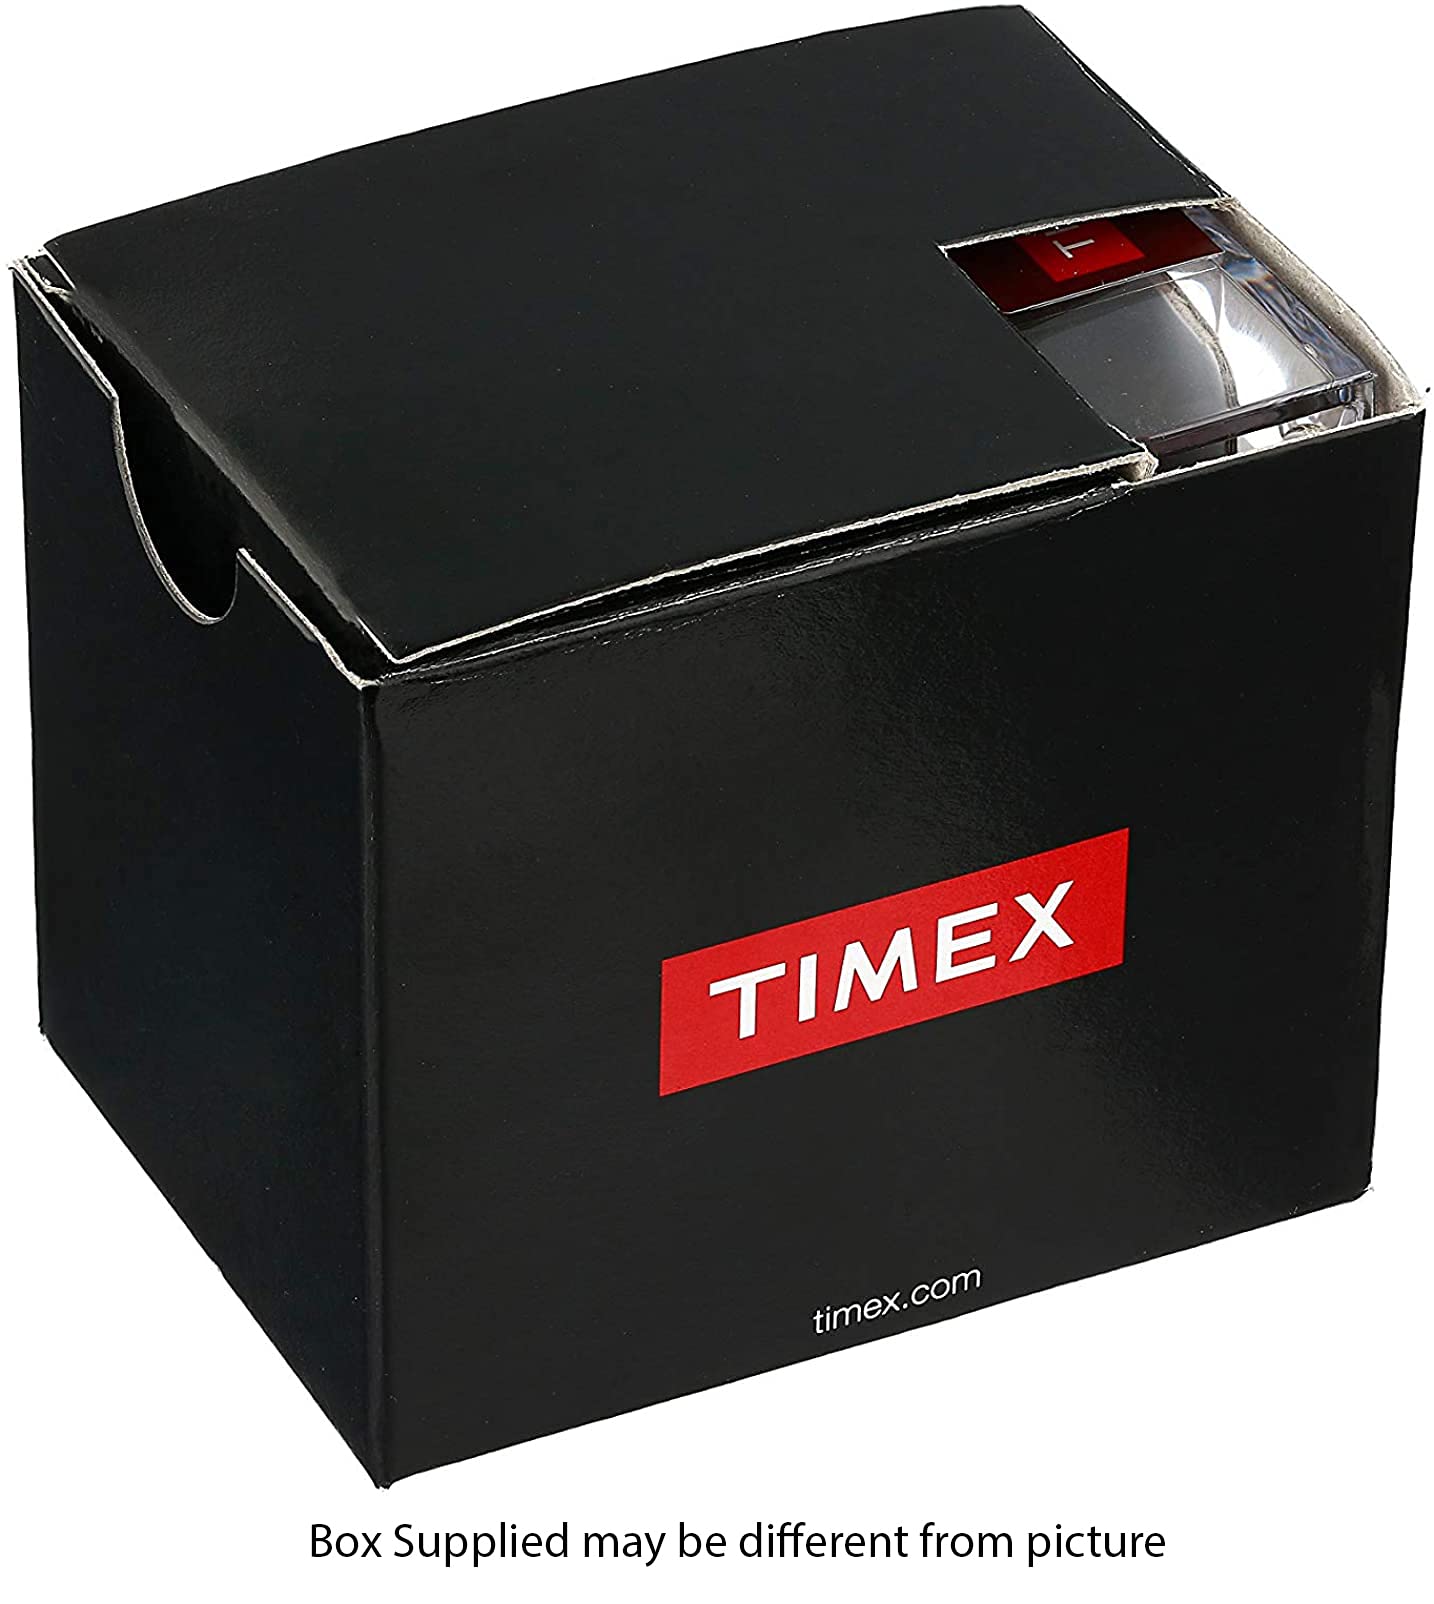 Timex Unisex Weekender 38mm Watch